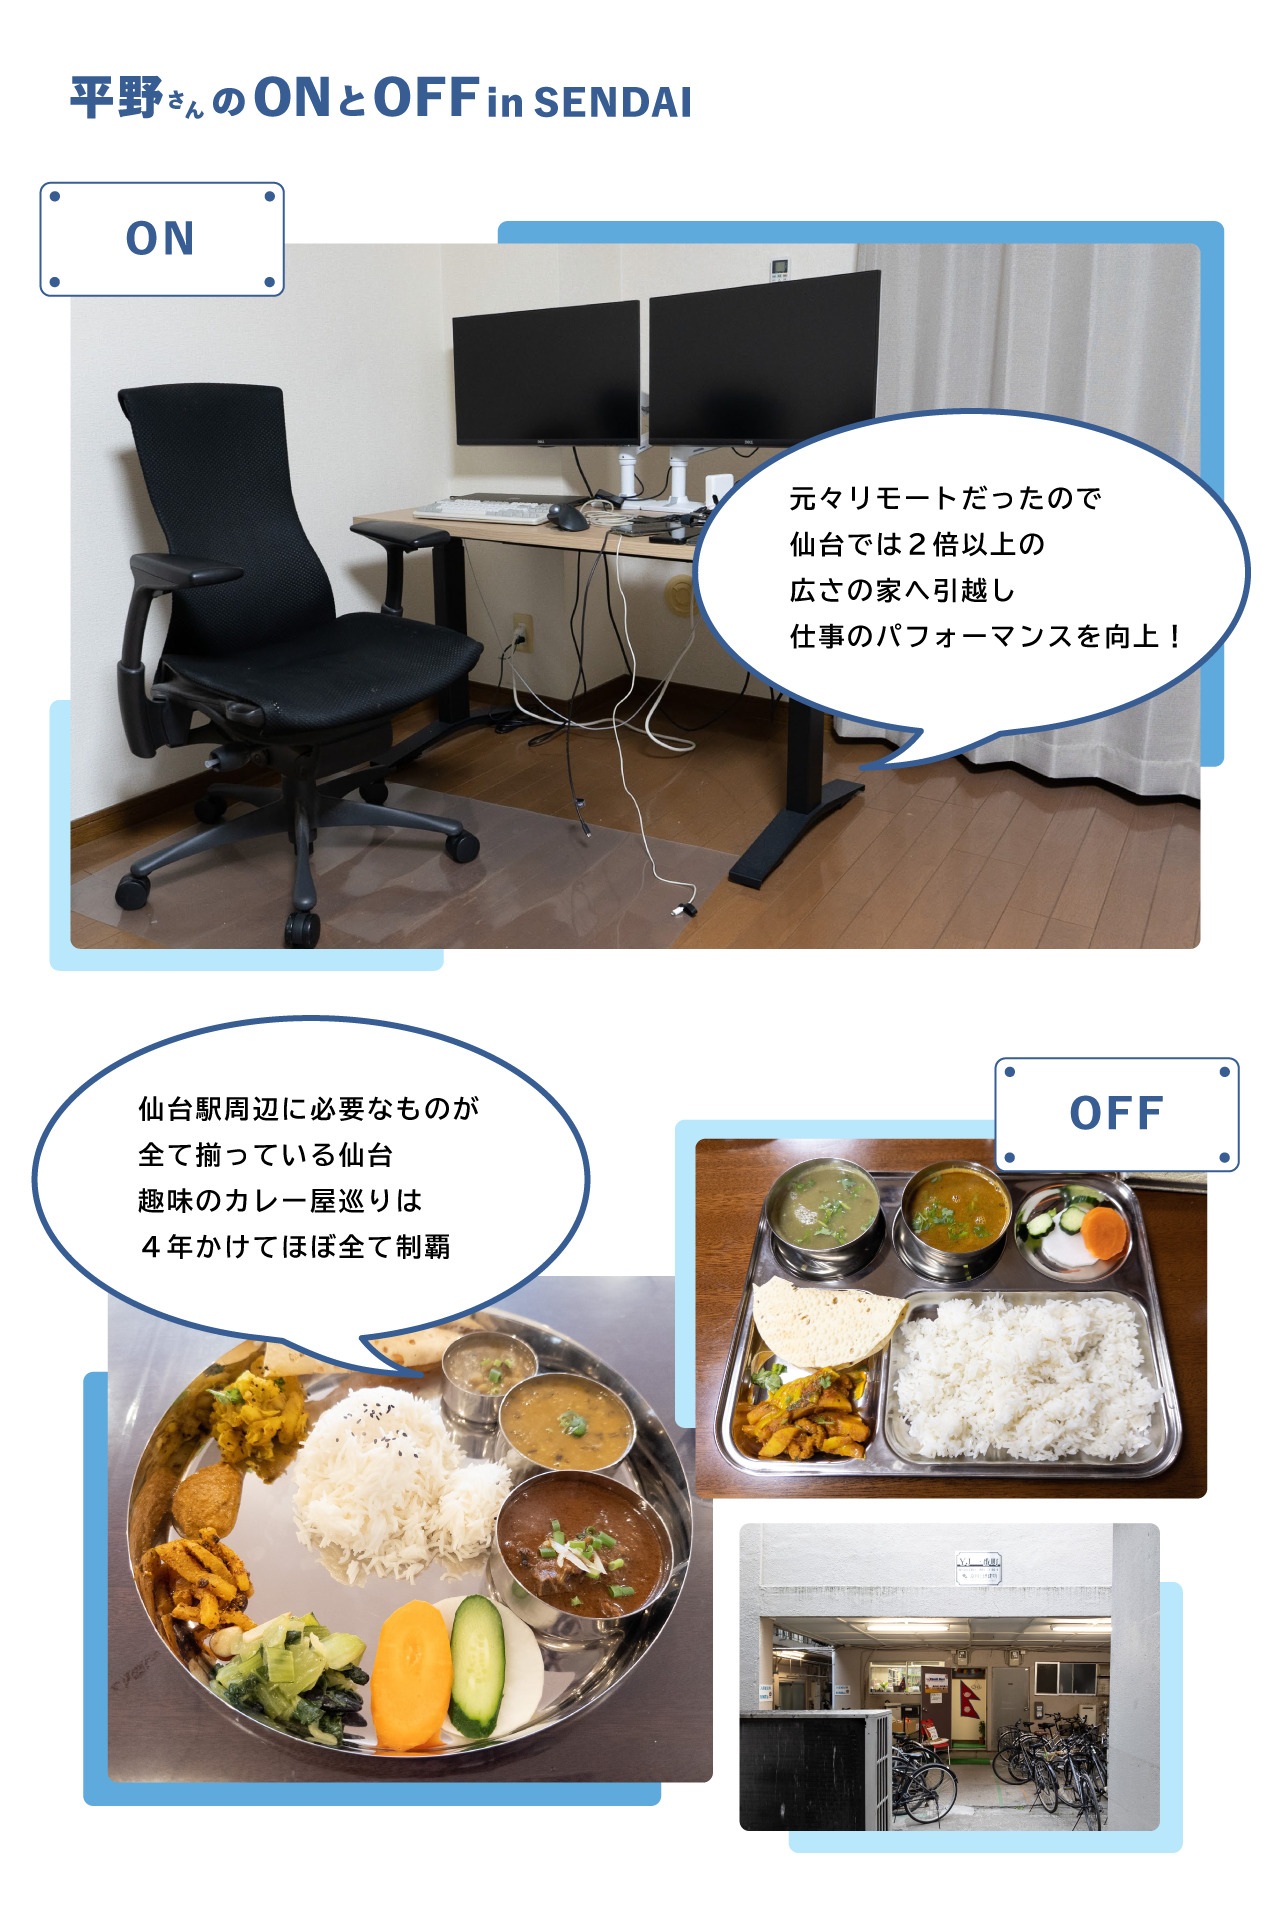 平野さんのオンオフ仕事場風景やカレーの写真が載っている